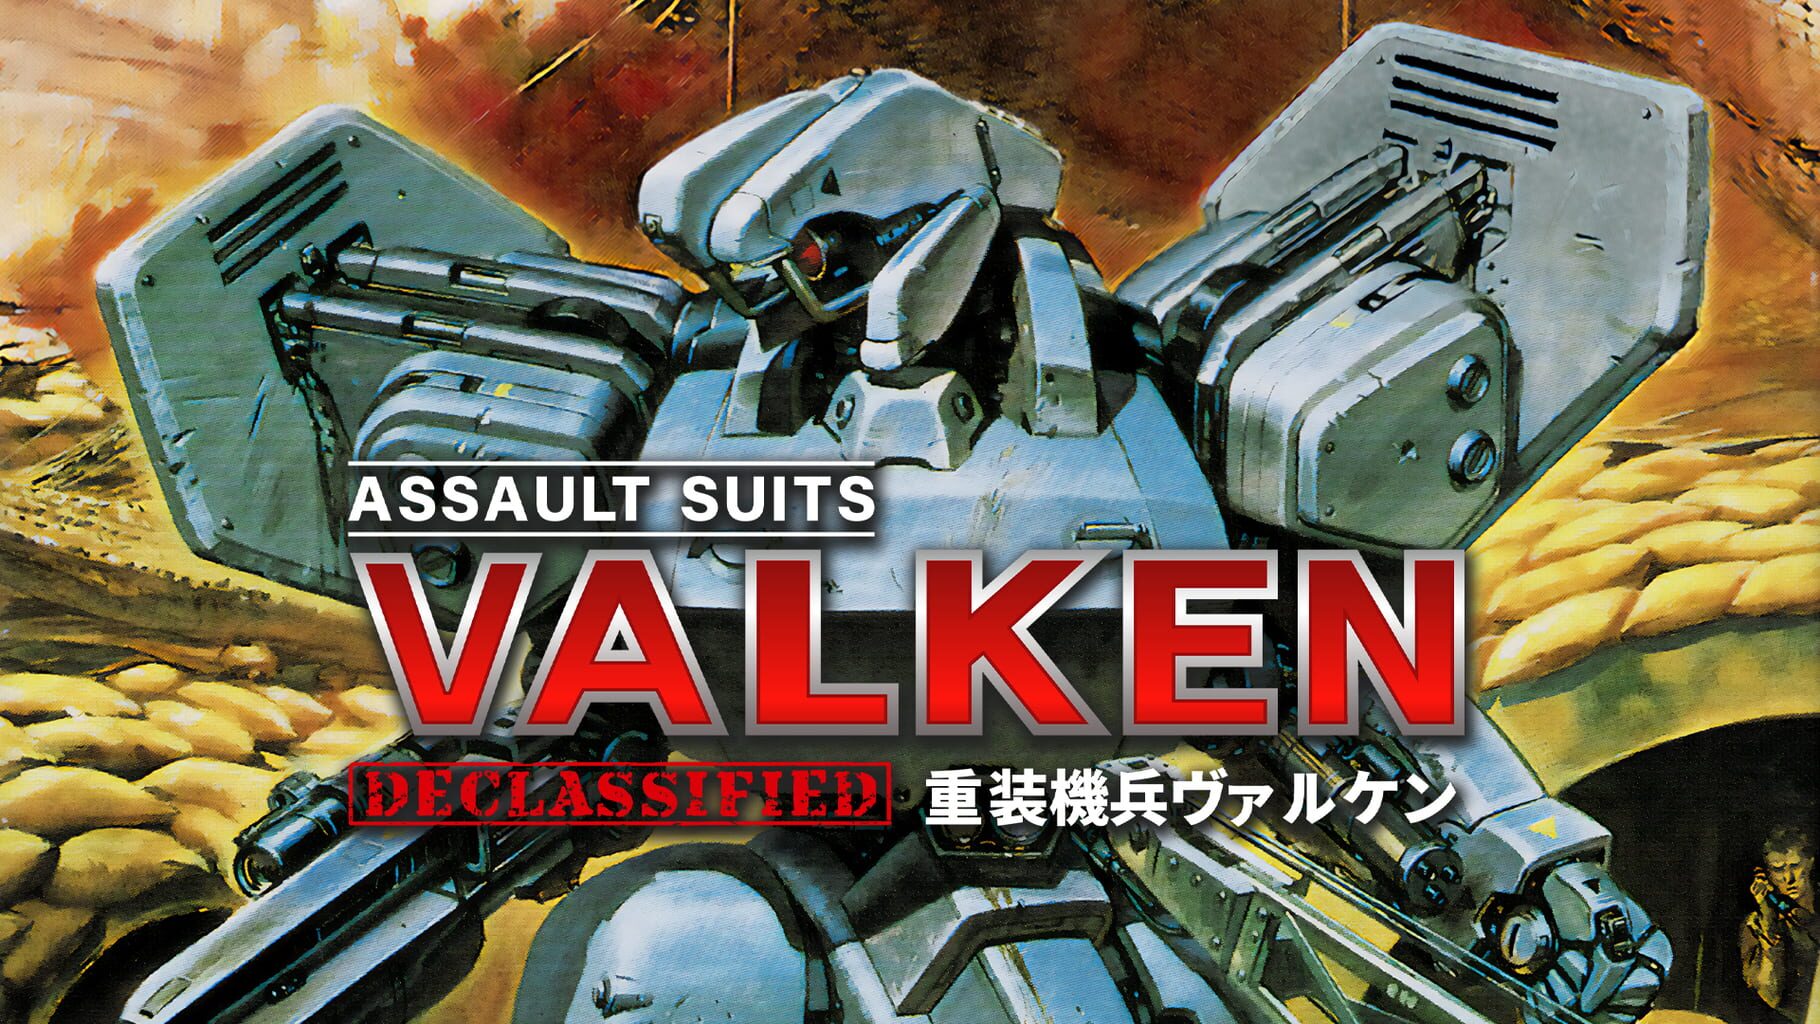 Arte - Assault Suits Valken Declassified